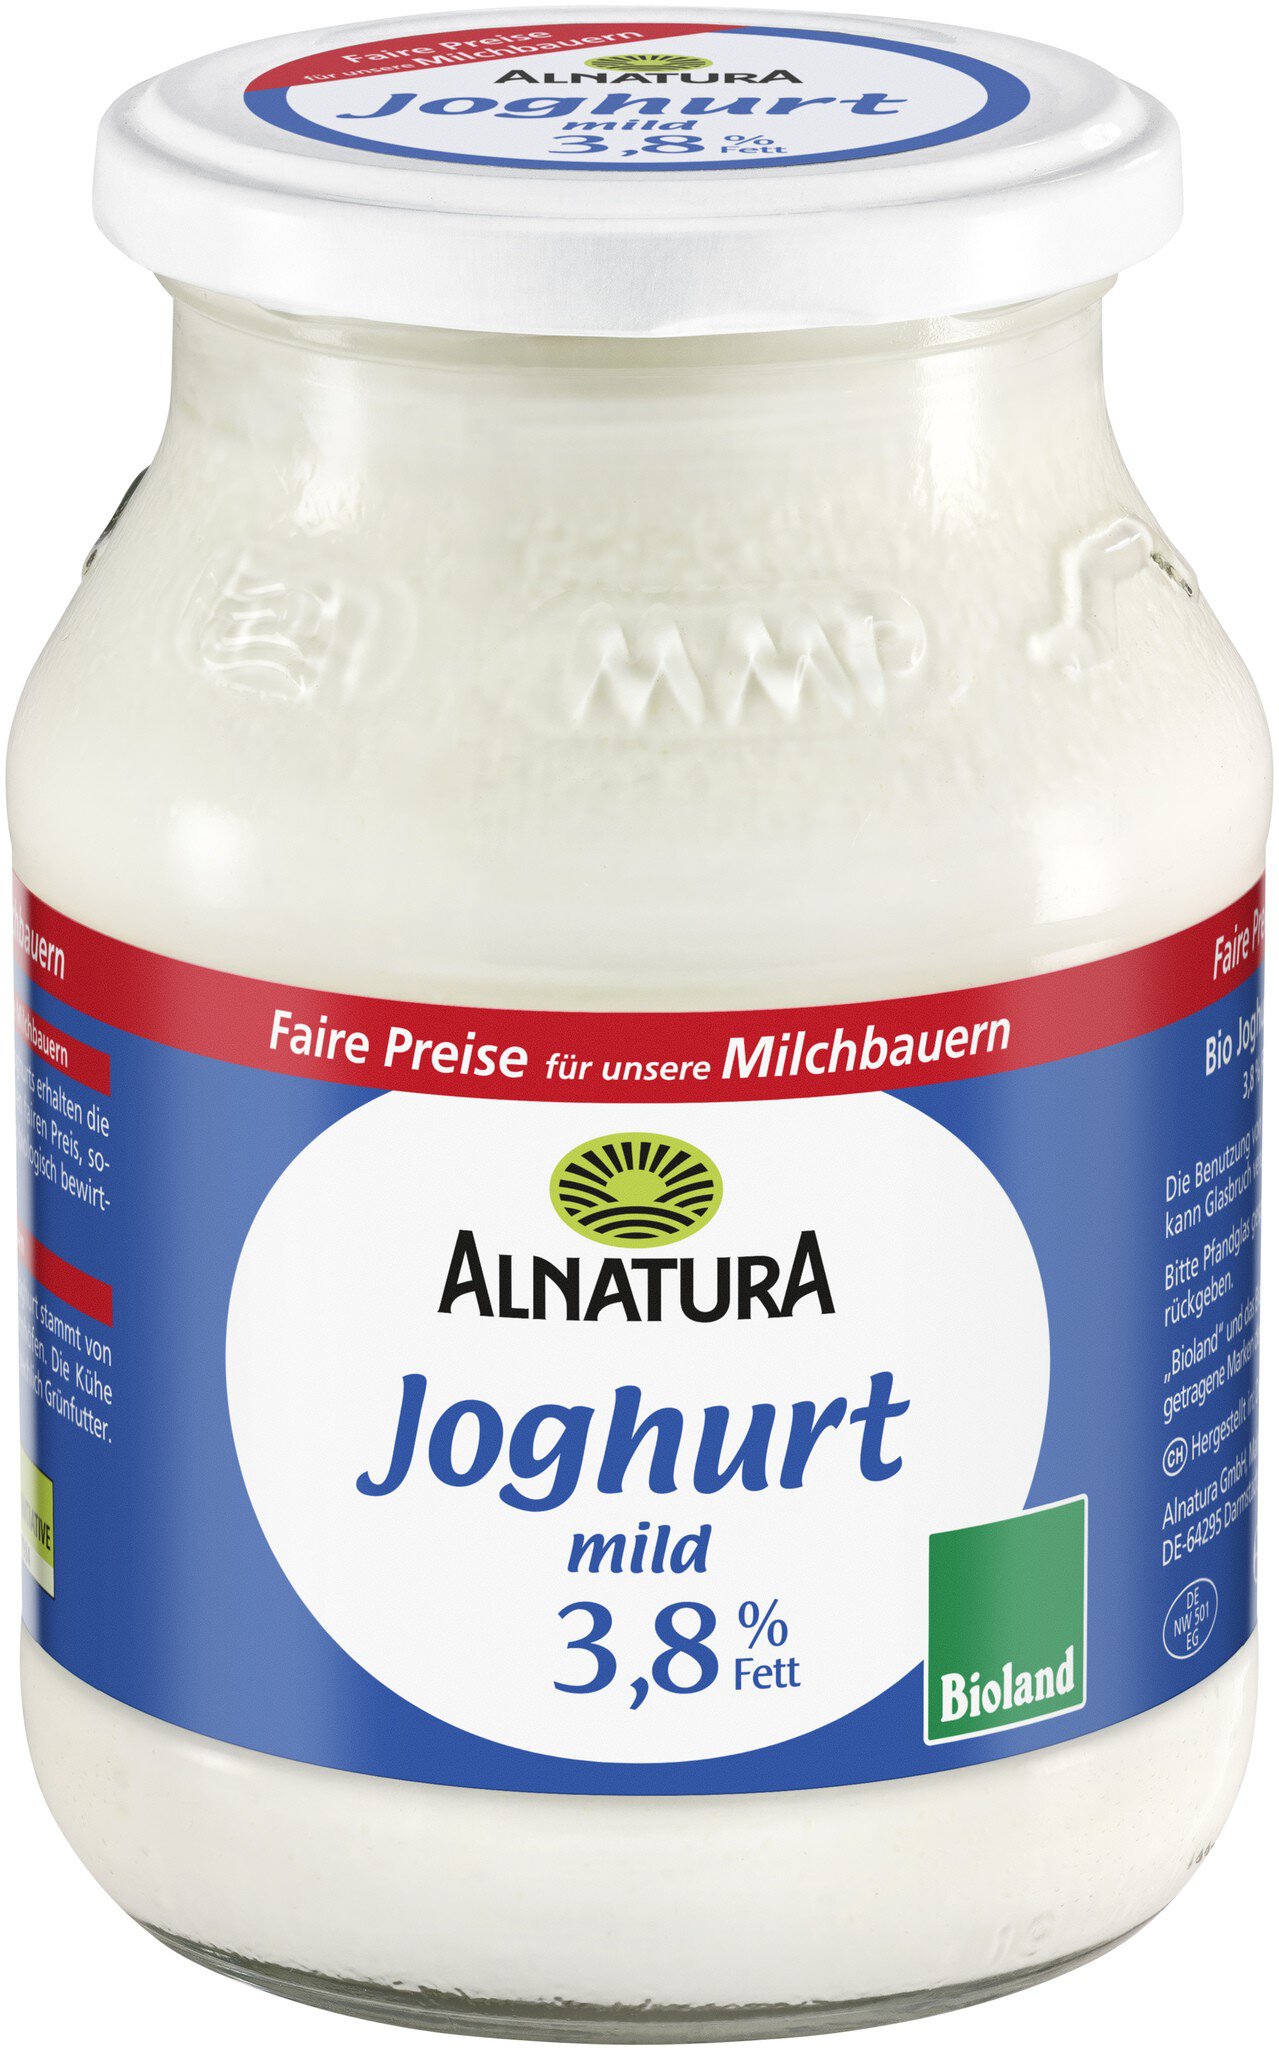 Joghurt mild 3,8 % Fett (500 g) in Bio-Qualität von Alnatura